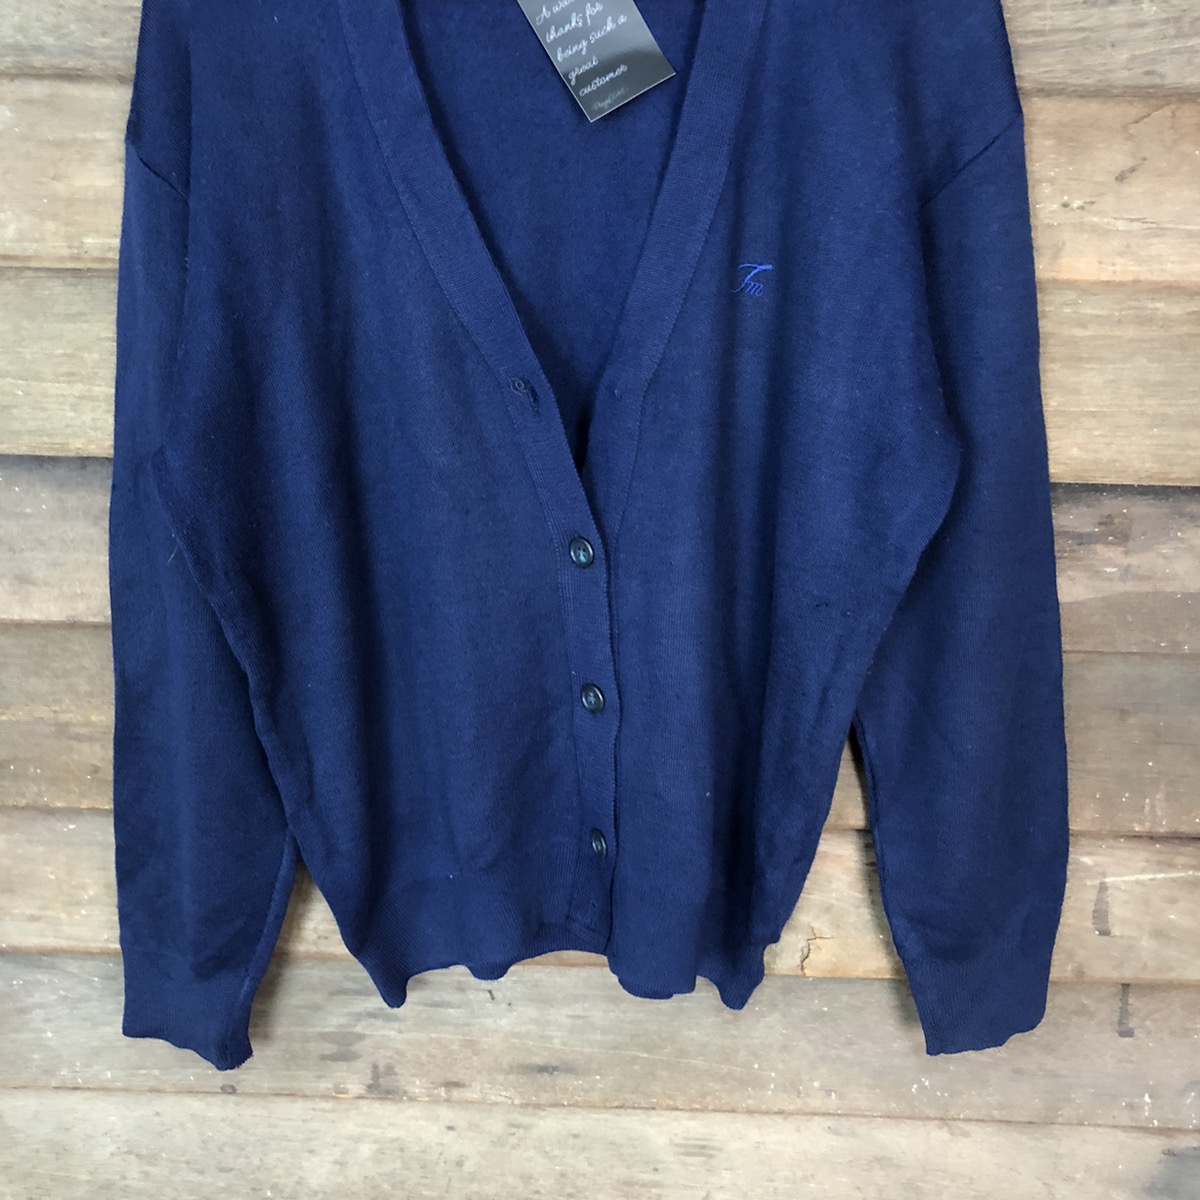 Cardigan - Superior Mind Dark blue Cardigan knitwear #5007 - 3